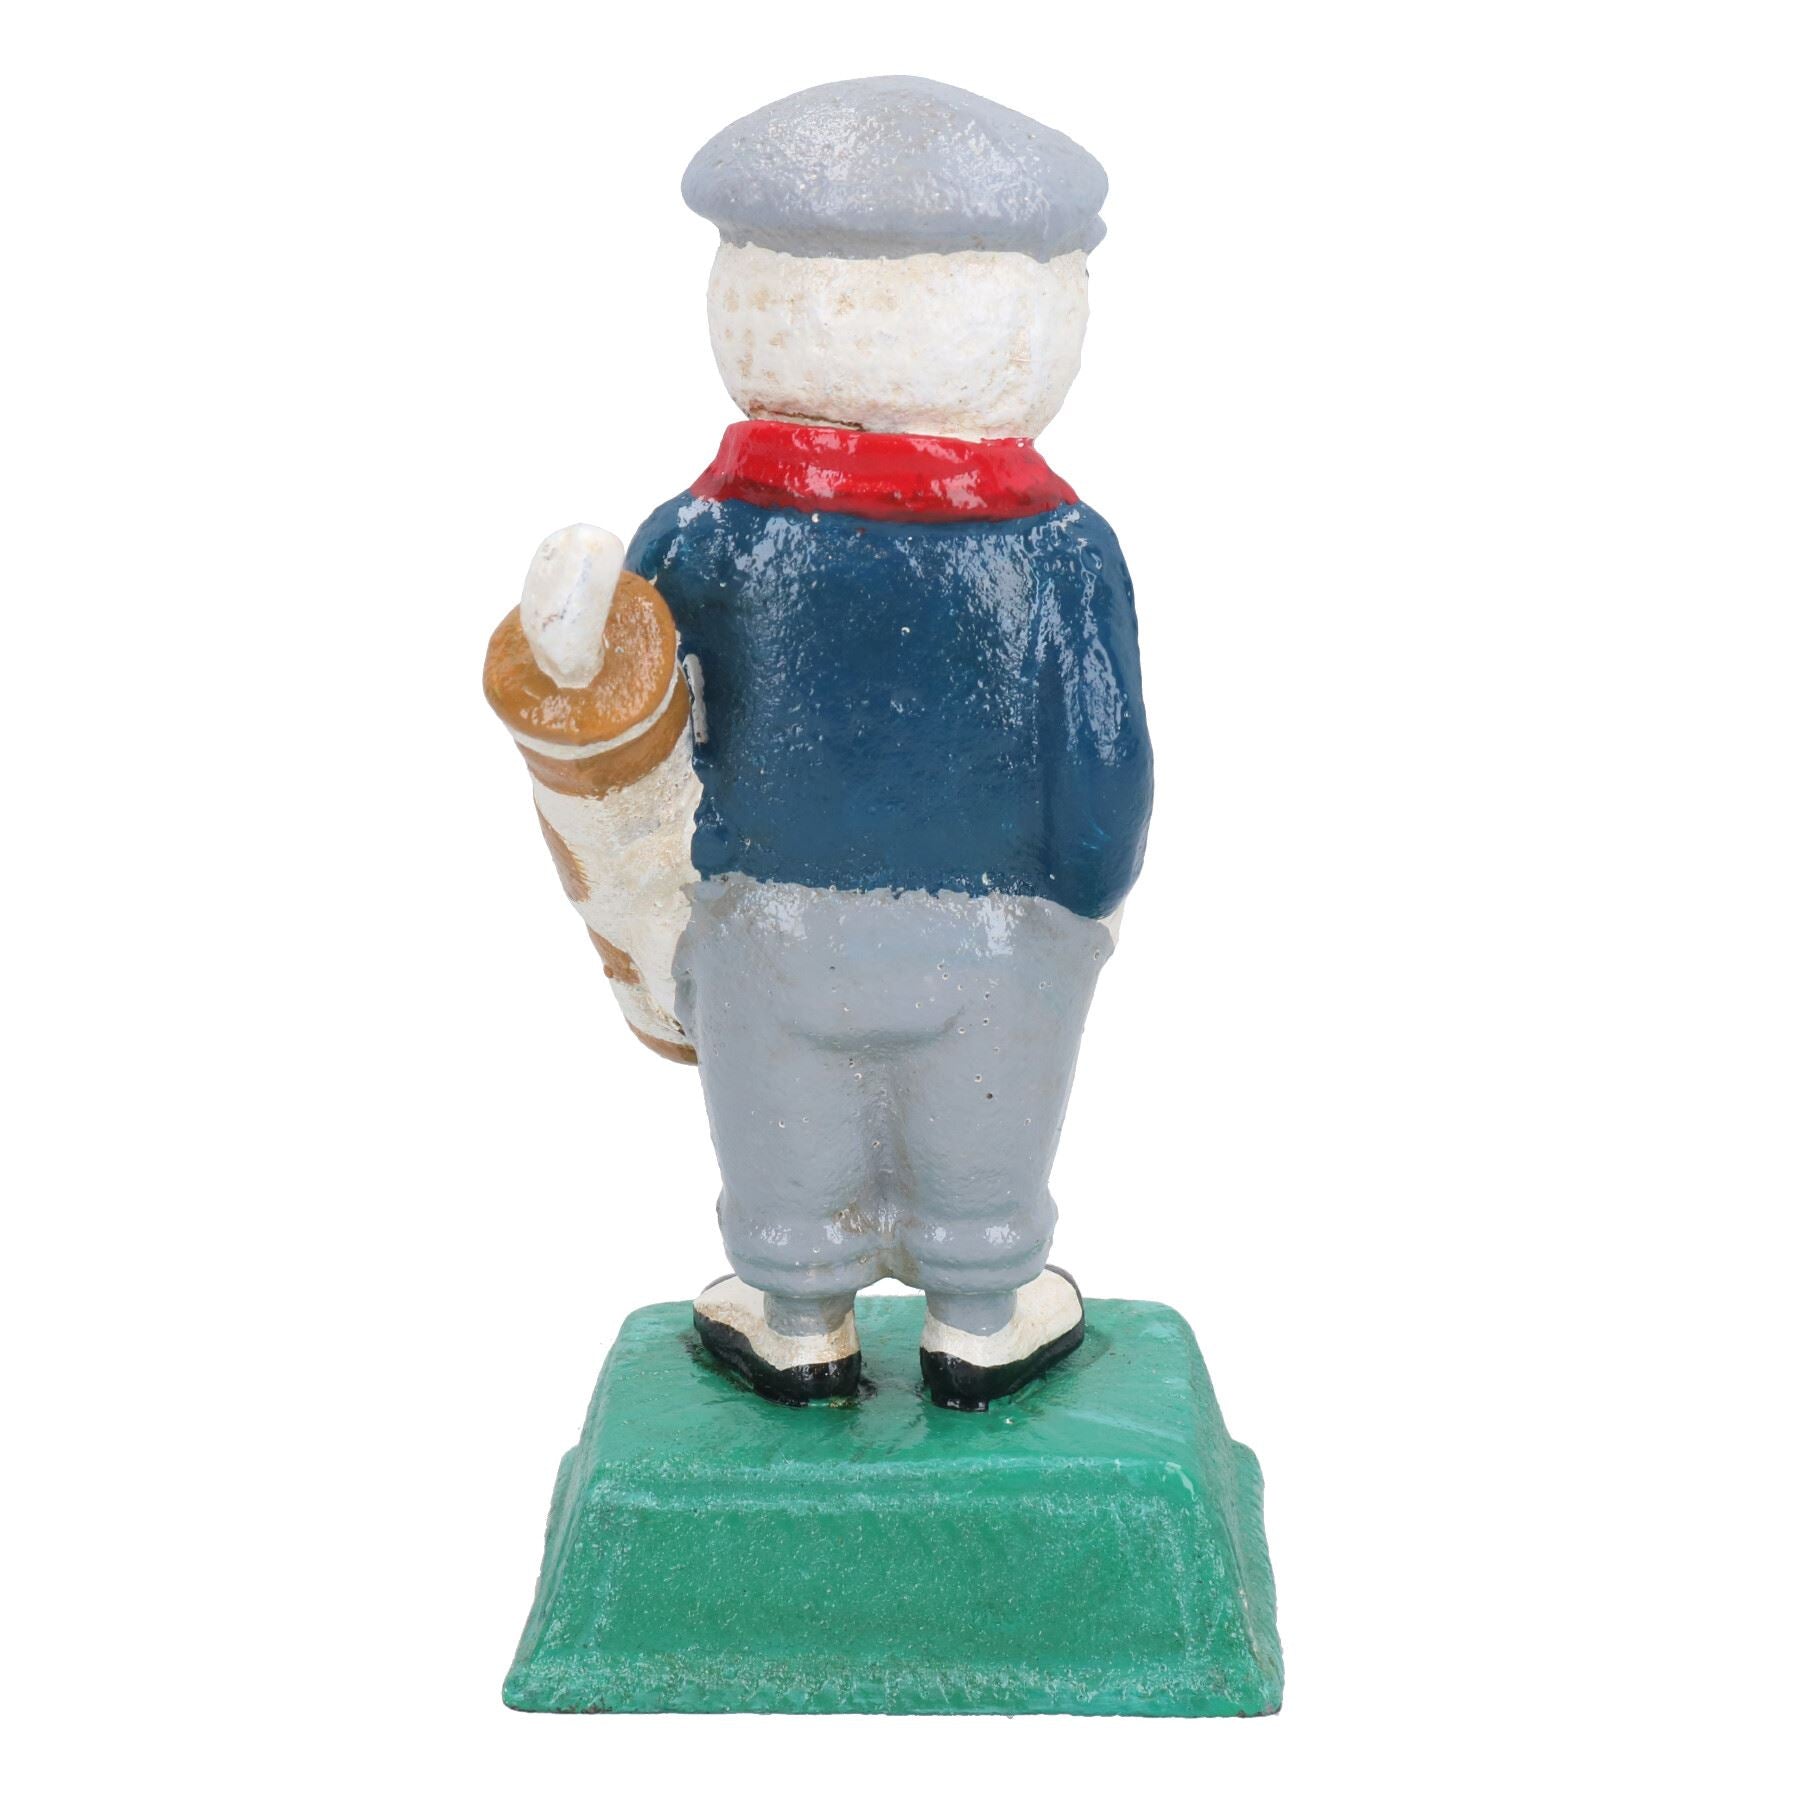 Dunlop Golf Man Figure Statue Cast Iron Golfer Mascot Ornament House Home